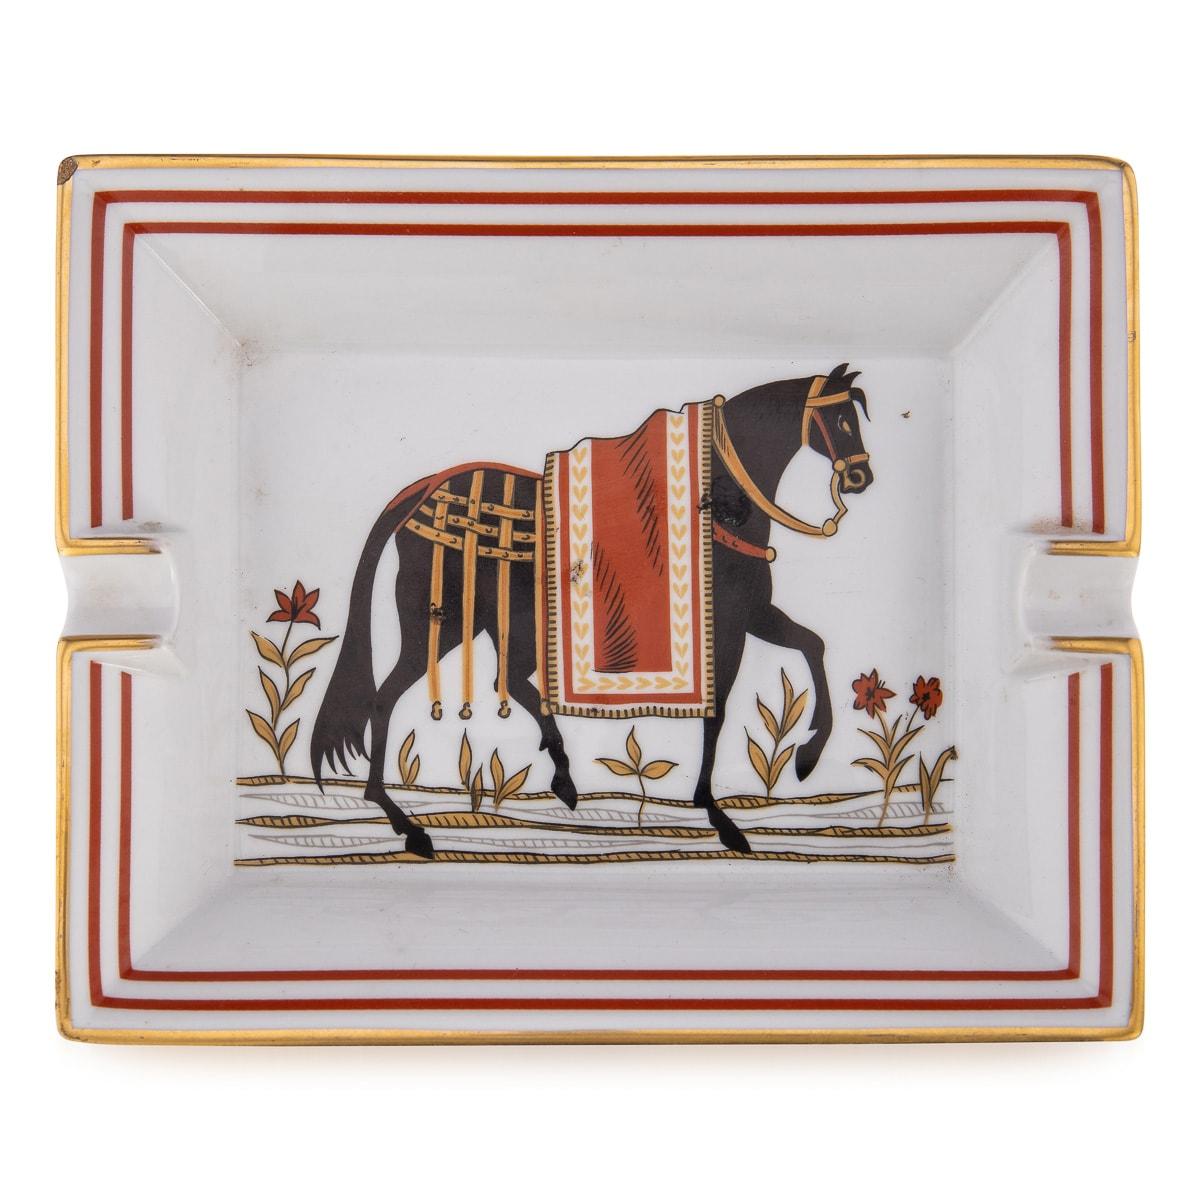 Ein Keramik-Aschenbecher von Hermes, hergestellt in Frankreich in der zweiten Hälfte des 20. Jahrhunderts. Diese Aschenbecher hatten schon immer einen hohen Sammlerwert, insbesondere die Vintage-Modelle. Dieses Exemplar hat ein hübsches Reitermotiv